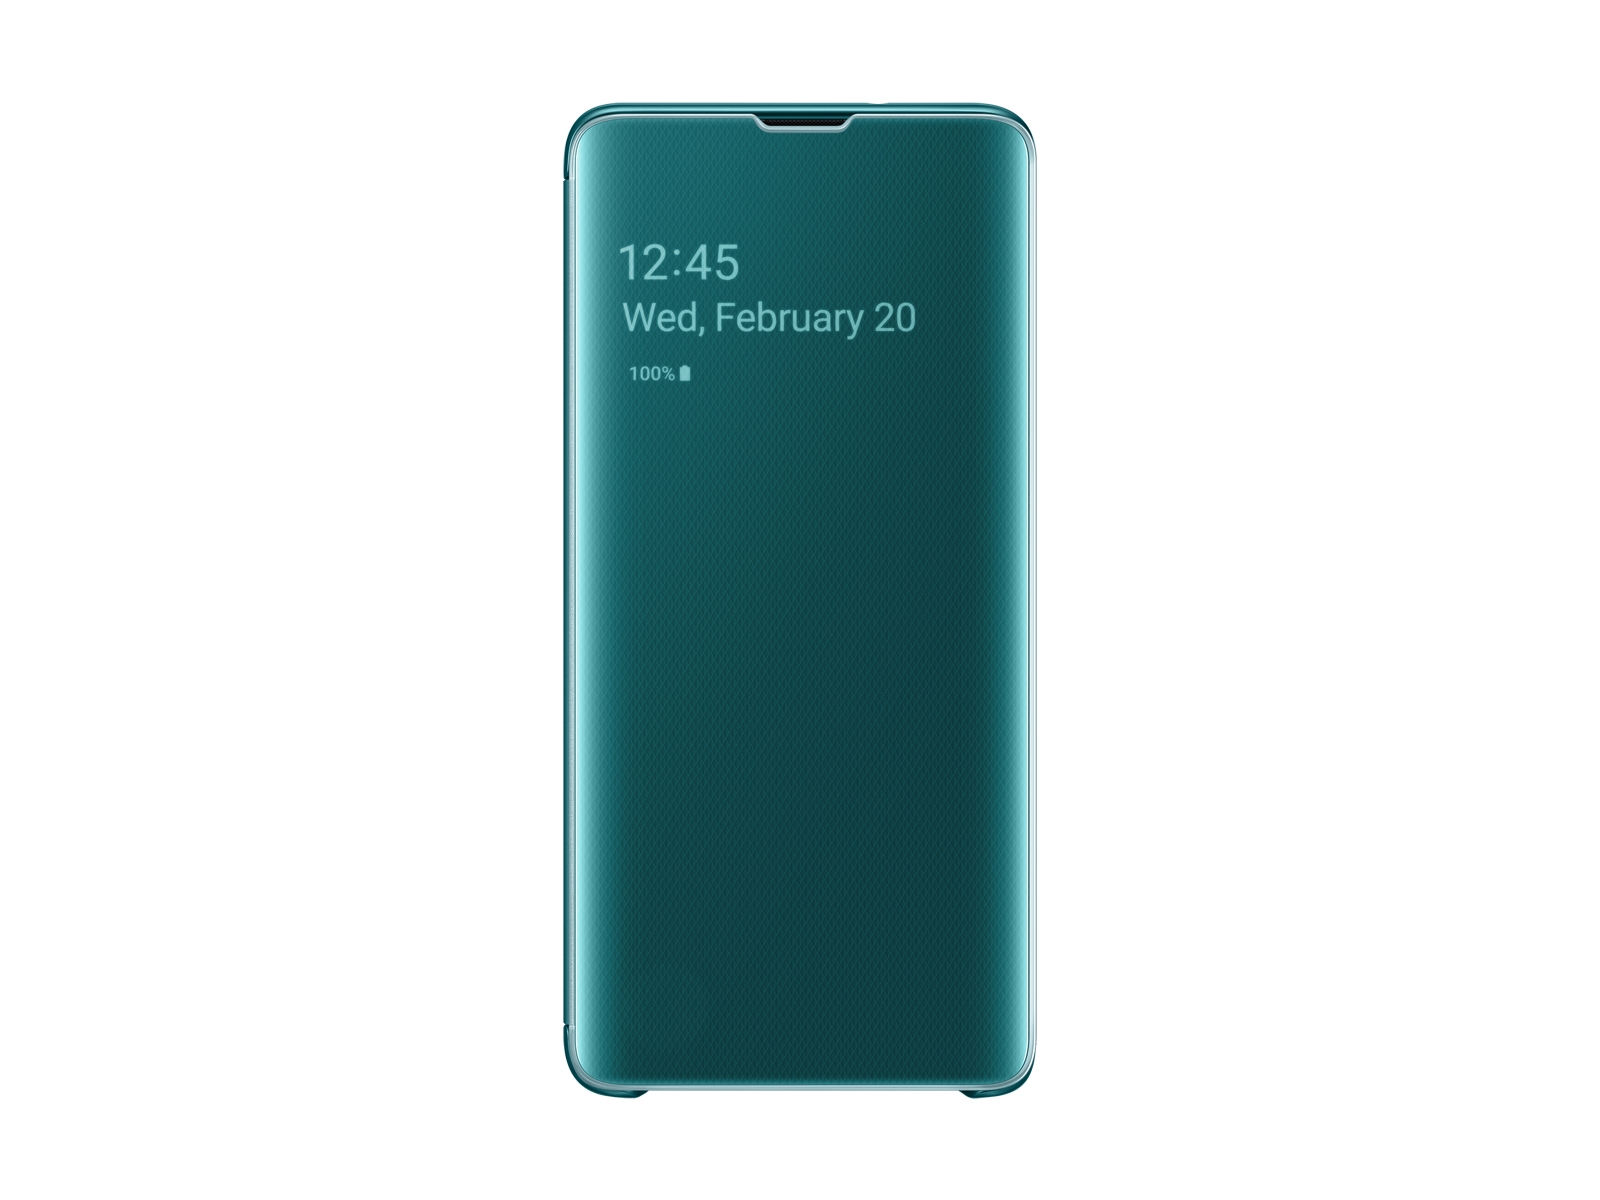 Nadruk ik ben gelukkig Defecte Galaxy S10 S-View Flip Cover, Green Mobile Accessories - EF-ZG973CGEGUS |  Samsung US